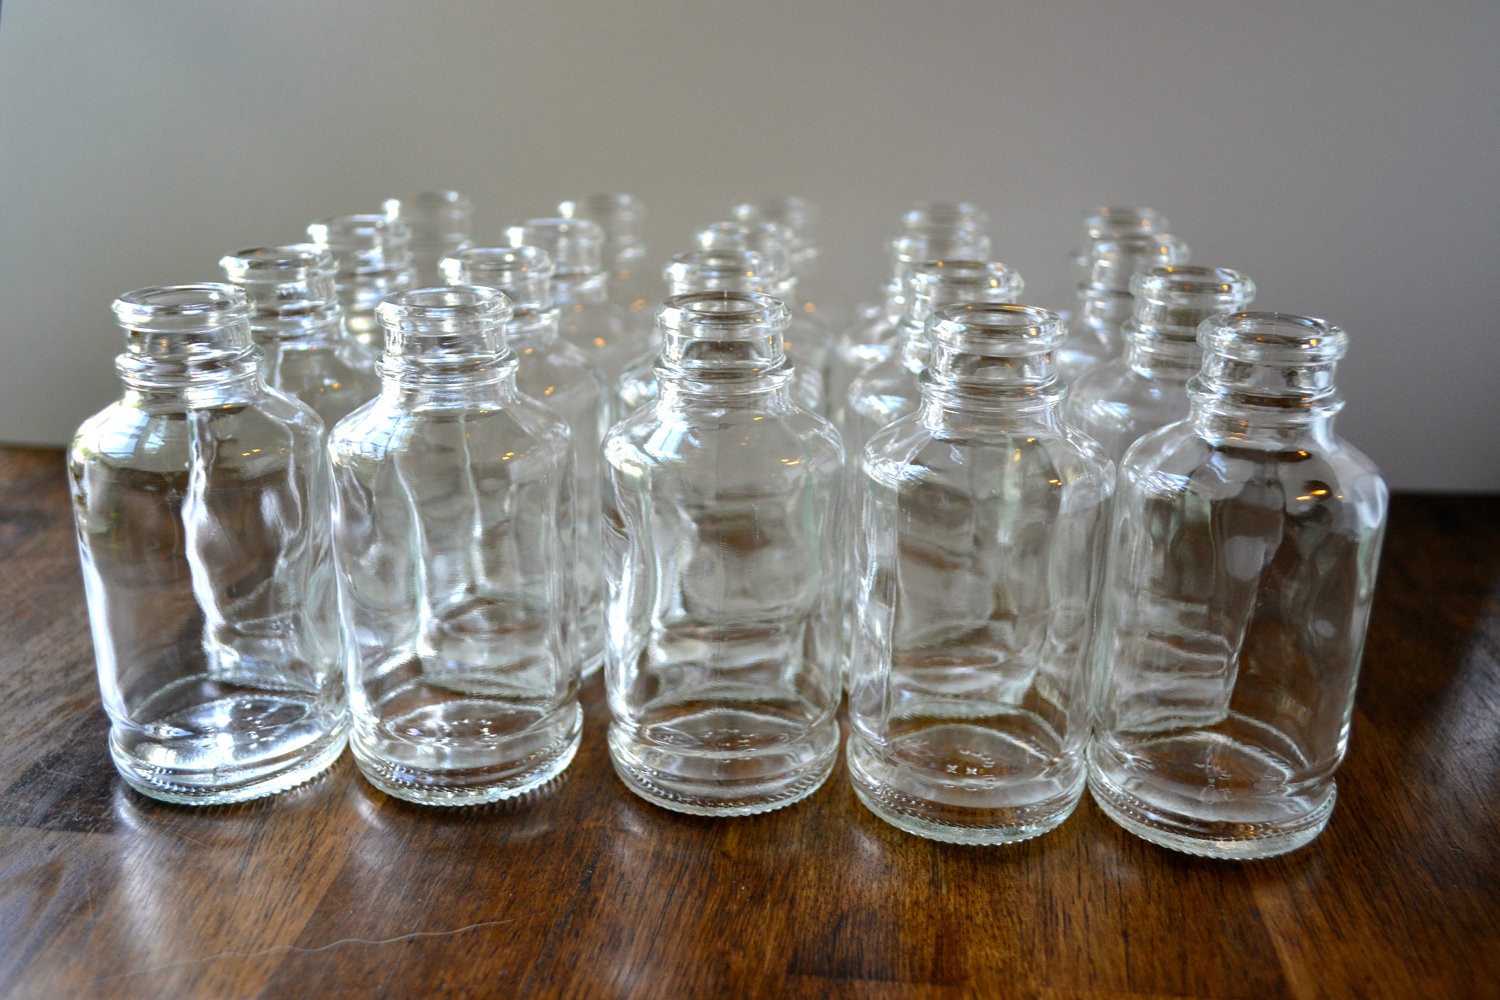 plastic bud vases bulk of mini glass vases bulk glass designs pertaining to plastic bud vases designs bulk small in